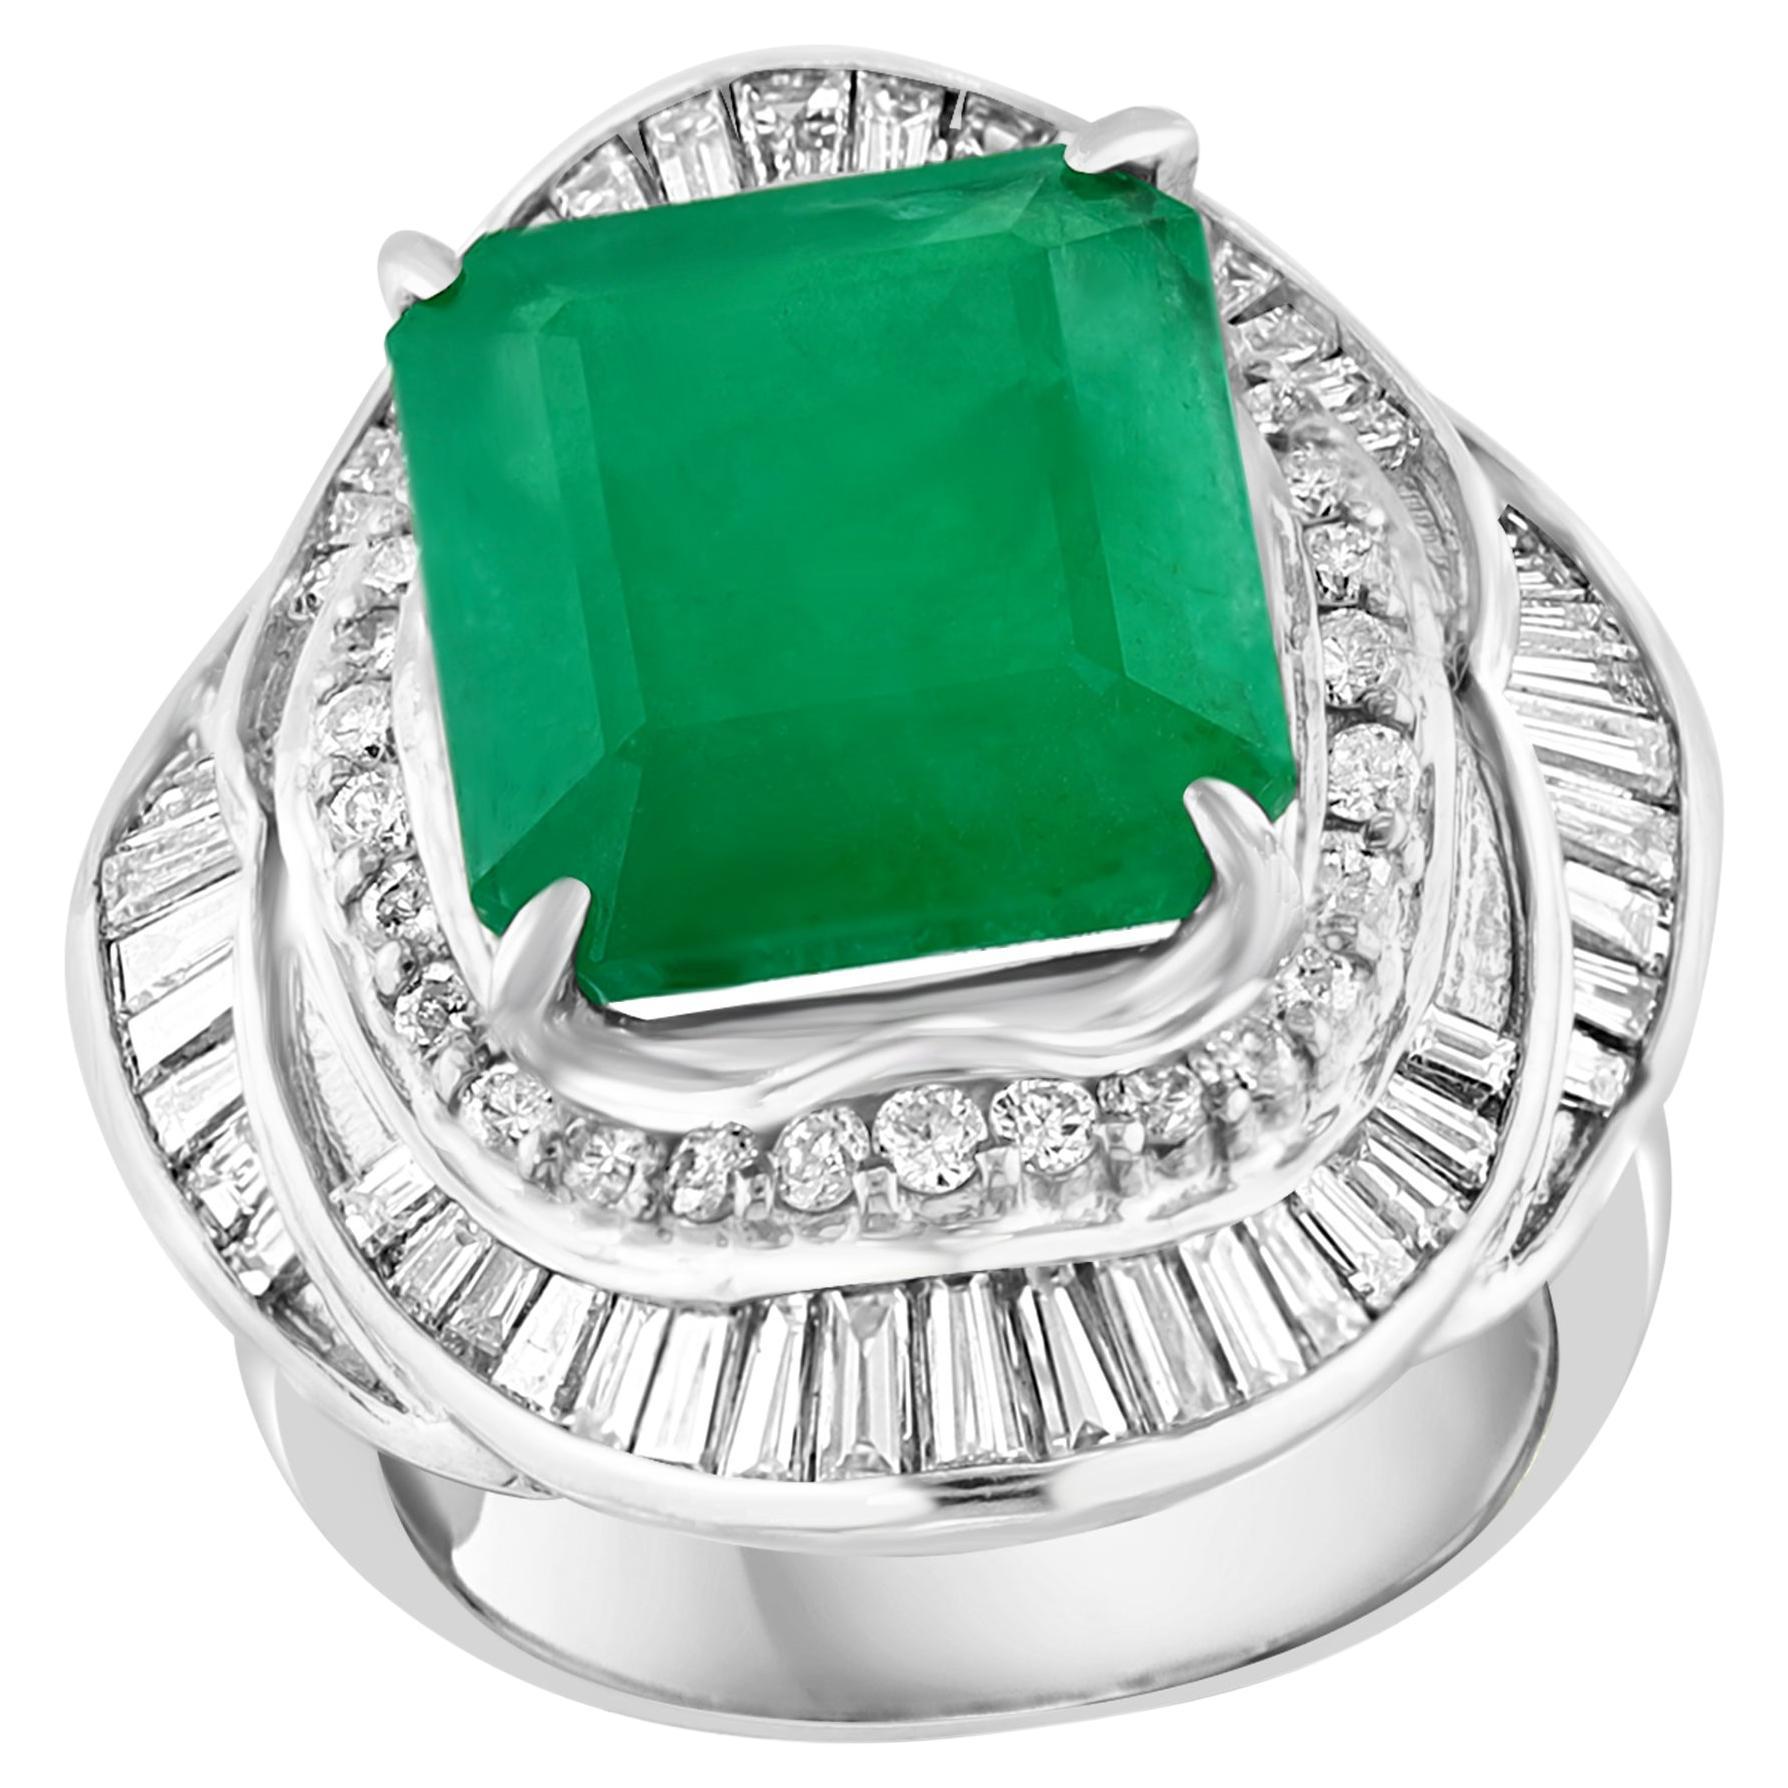 Natural 8 Carat Emerald Cut Zambian Emerald & Diamond Ring in Platinum, Estate